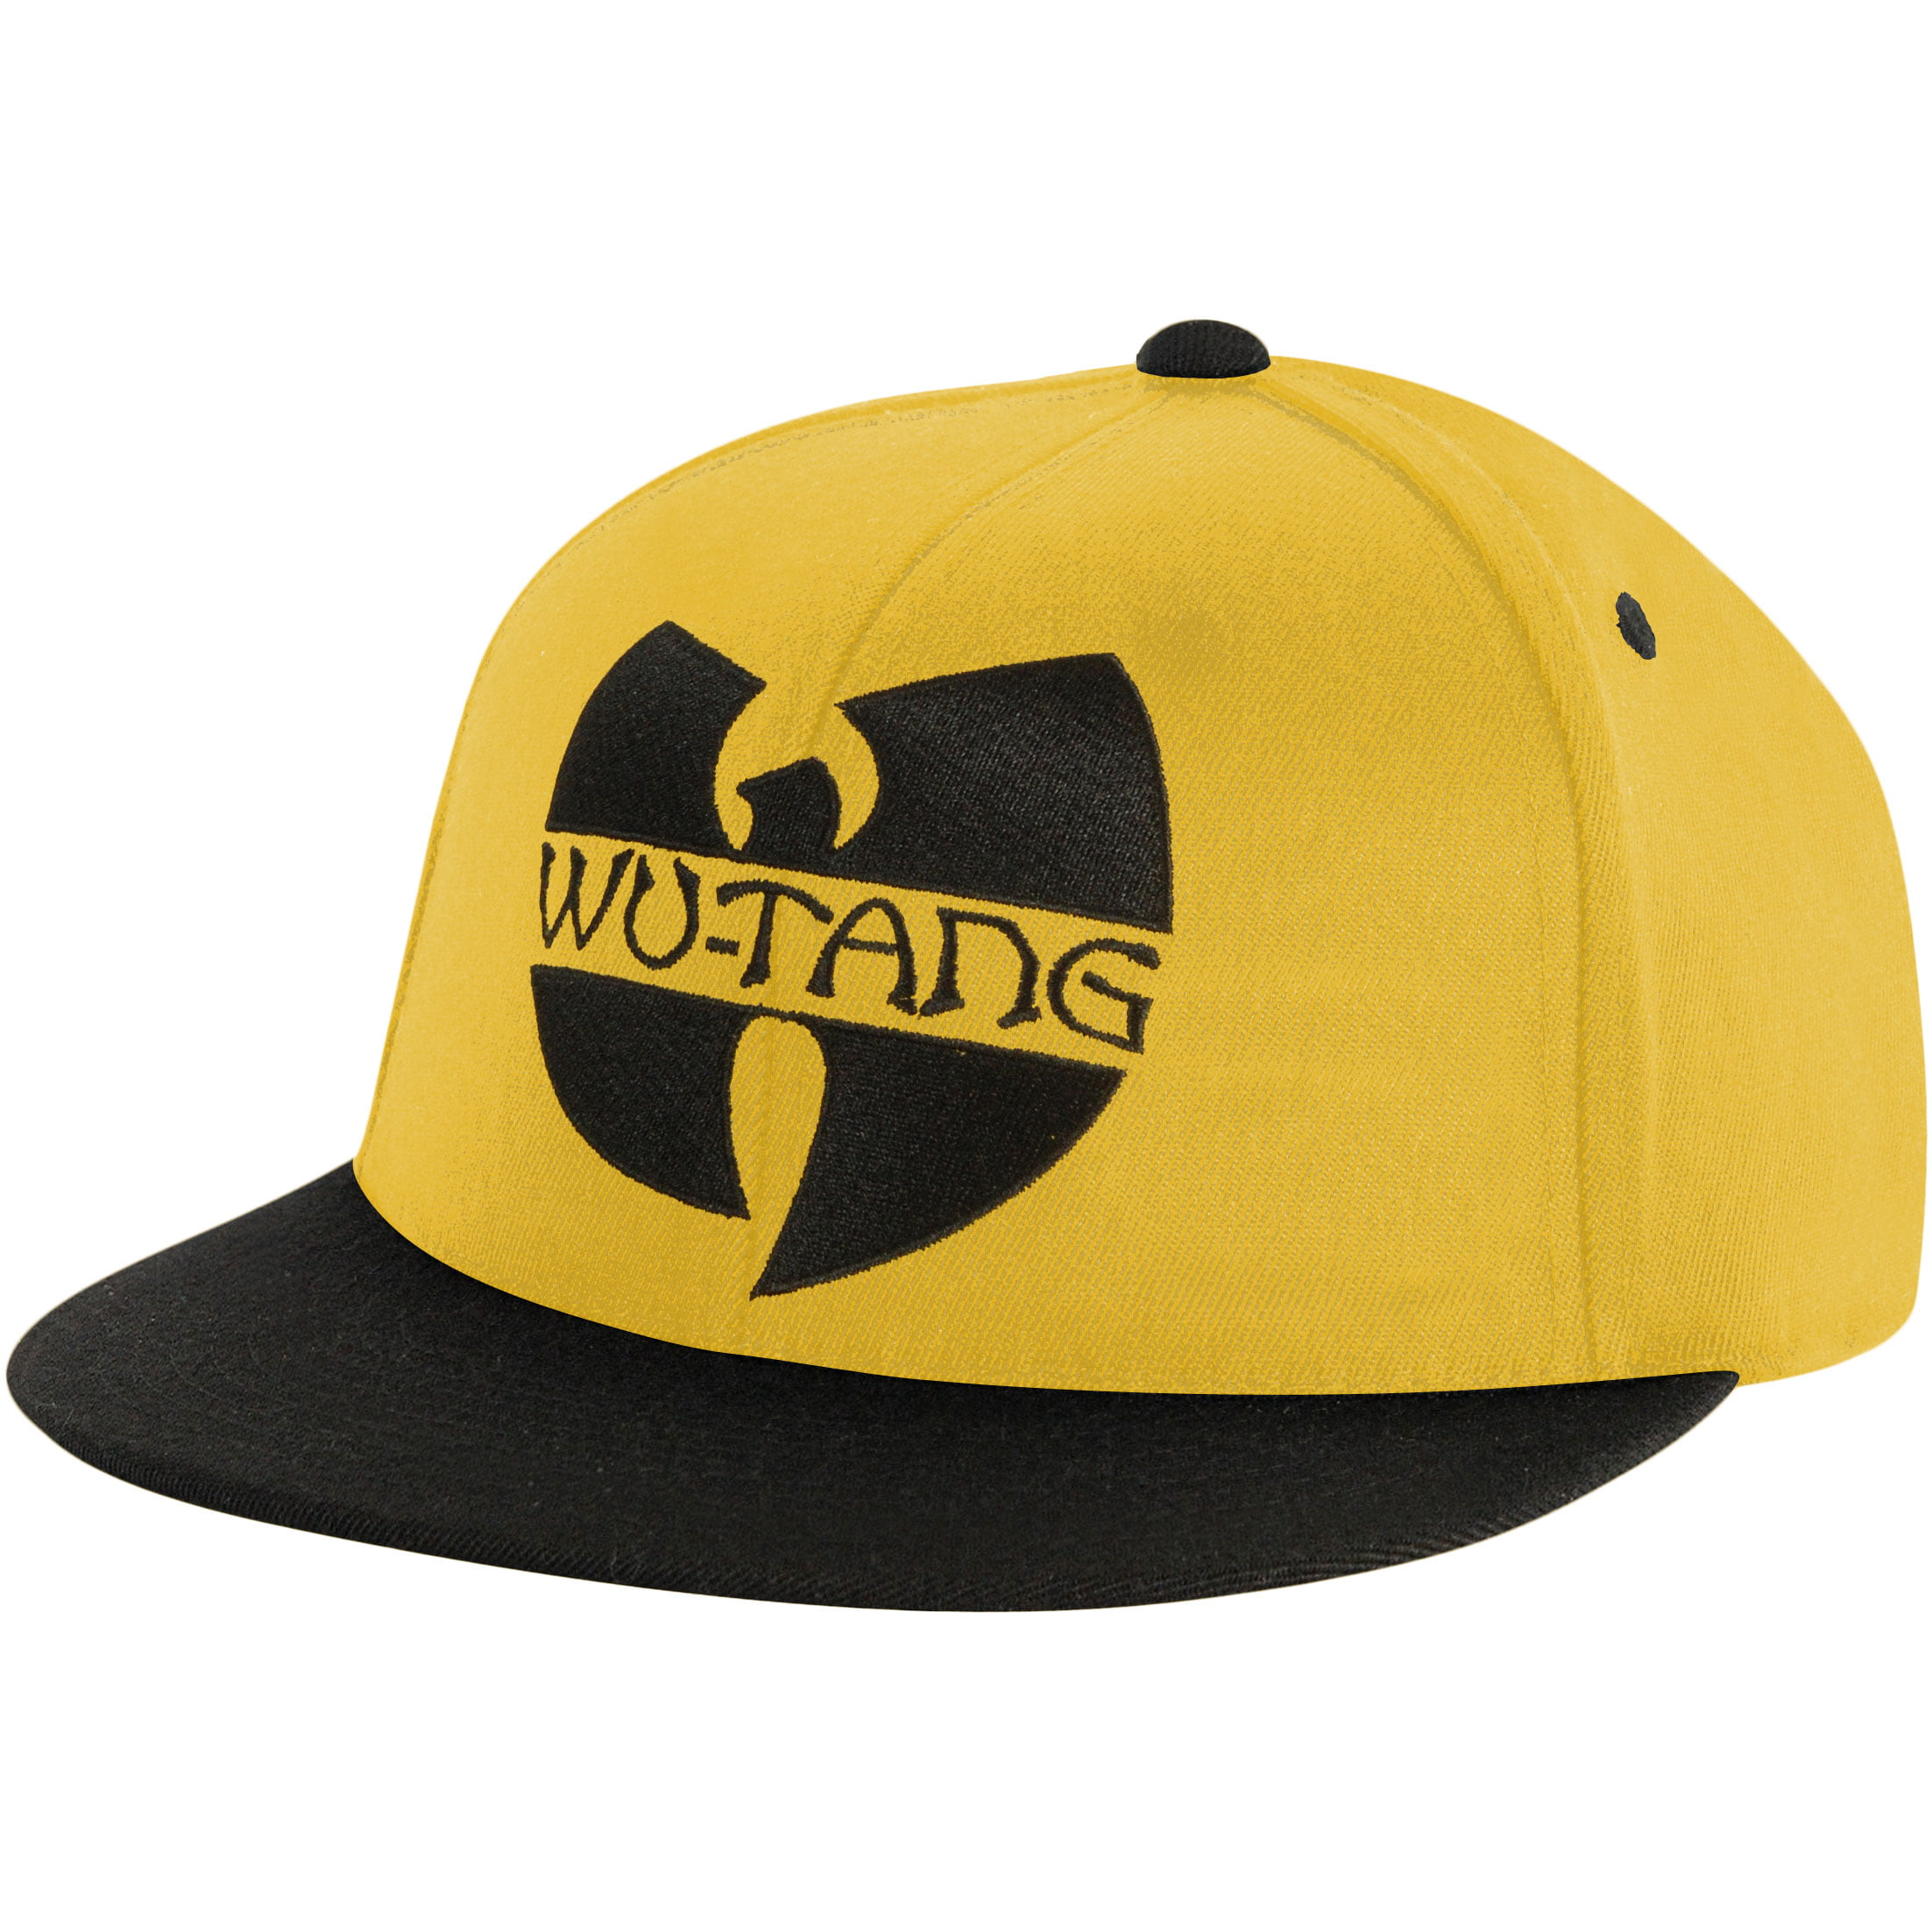 Wu Tang Clan - Wu Tang Clan Men's C.R.E.A.M. Baseball Cap Yellow - Wal...